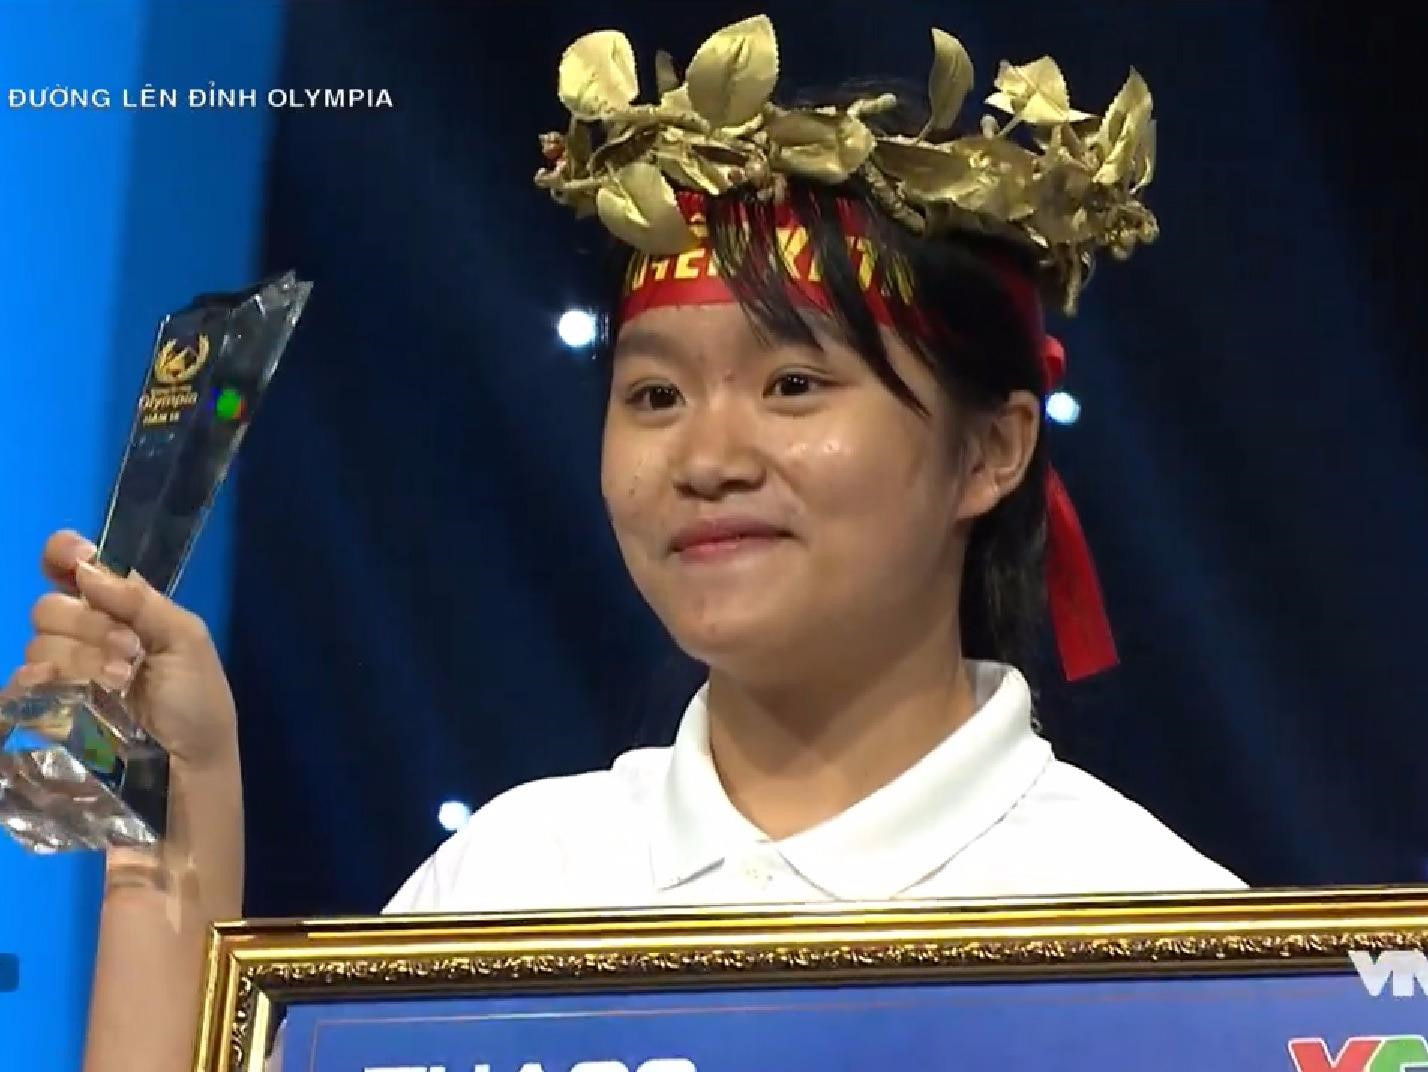 Nữ sinh hát "Em gái mưa" thắng tuyệt đối tại cuộc thi tuần Olympia